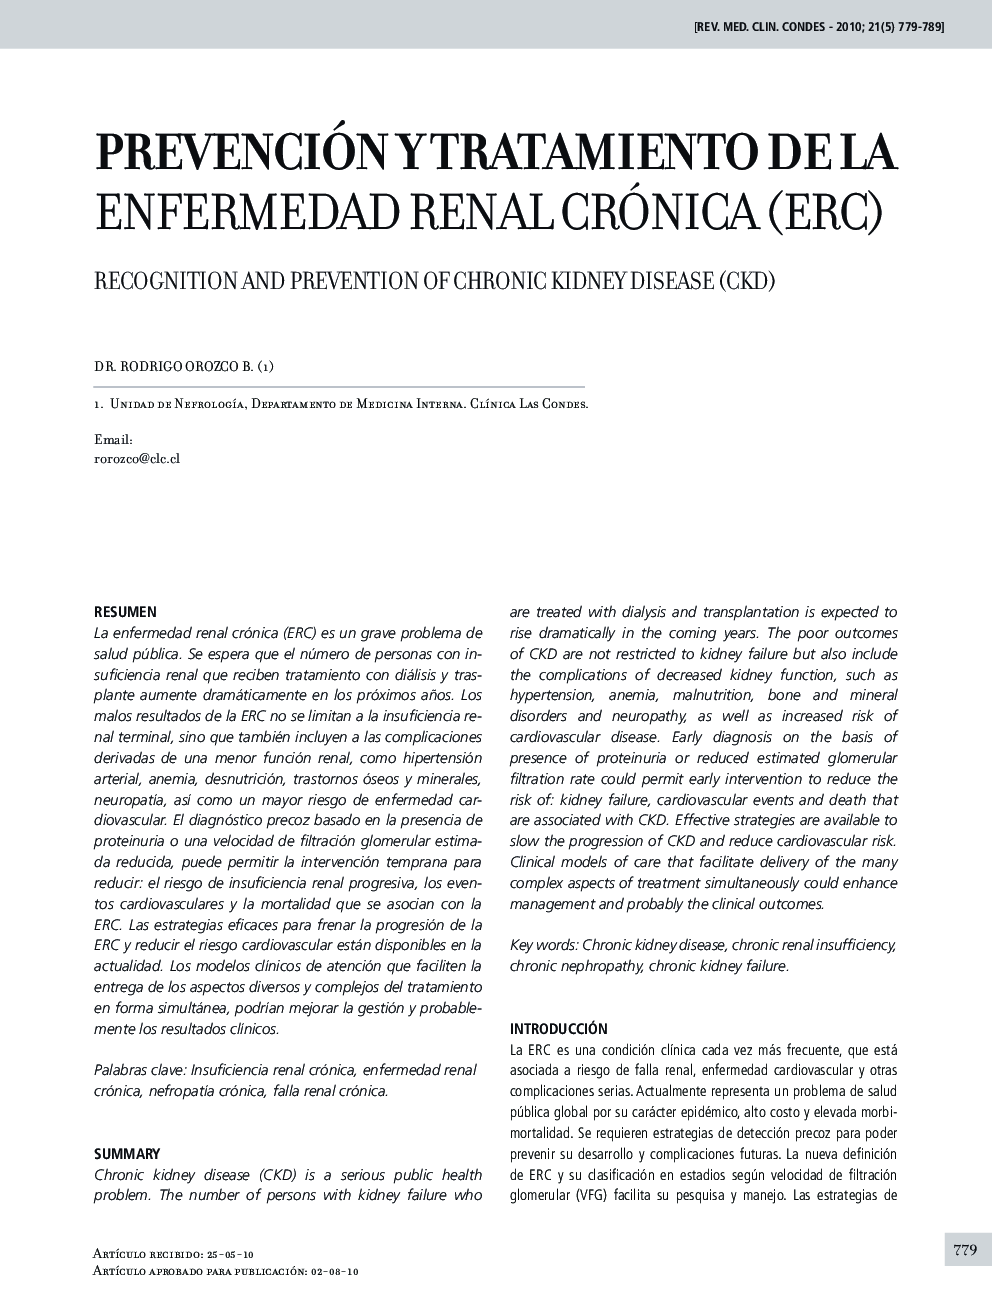 Prevención y tratamiento de la enfermedad renal crónica (ERC)